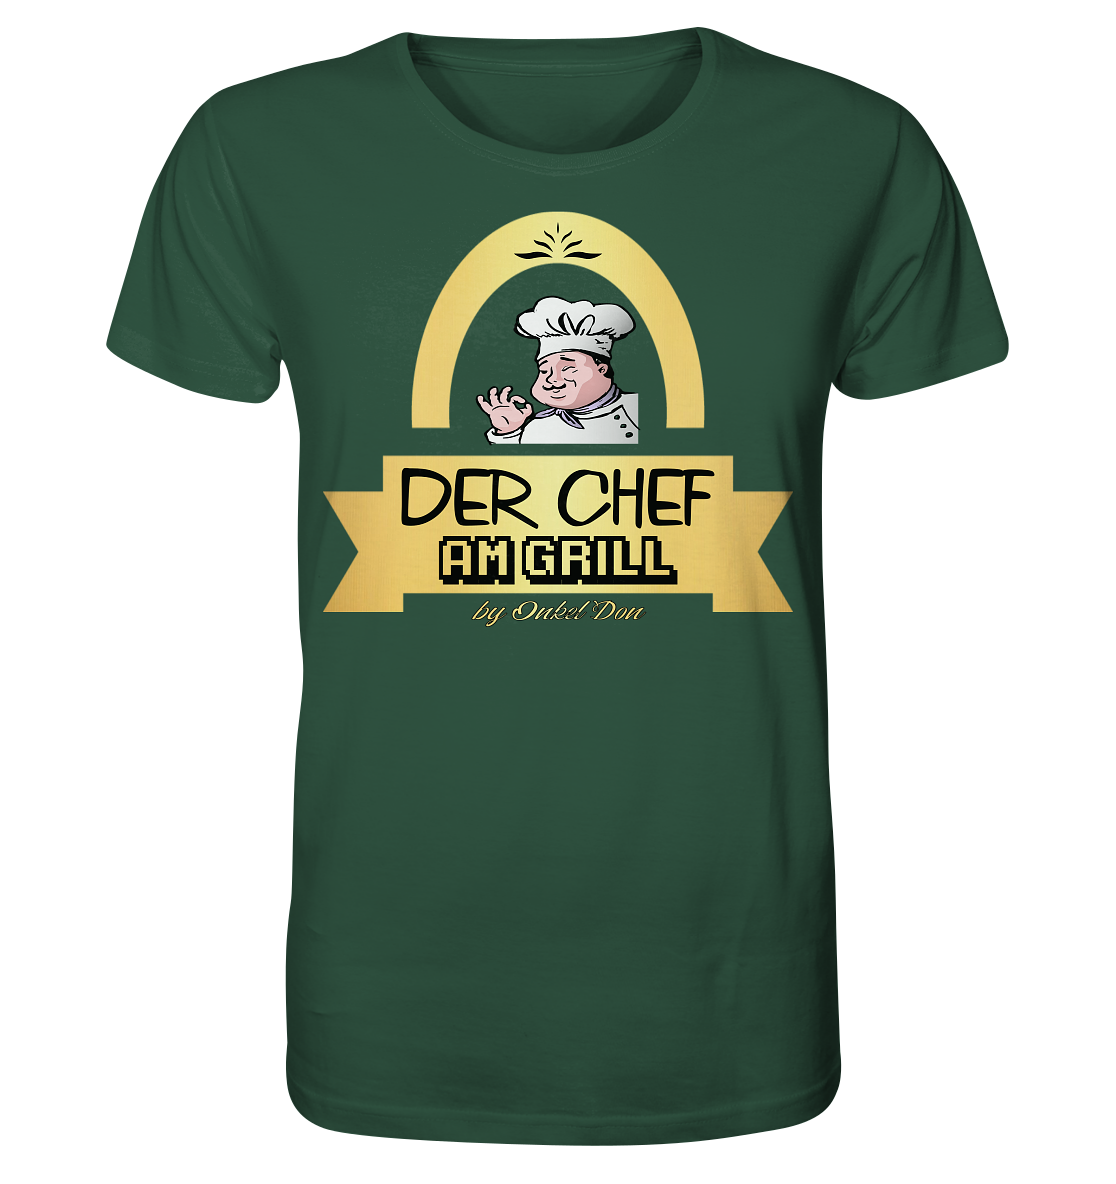 Der Chef - Herren Bio-Baumwolle Shirt - Onkel Don